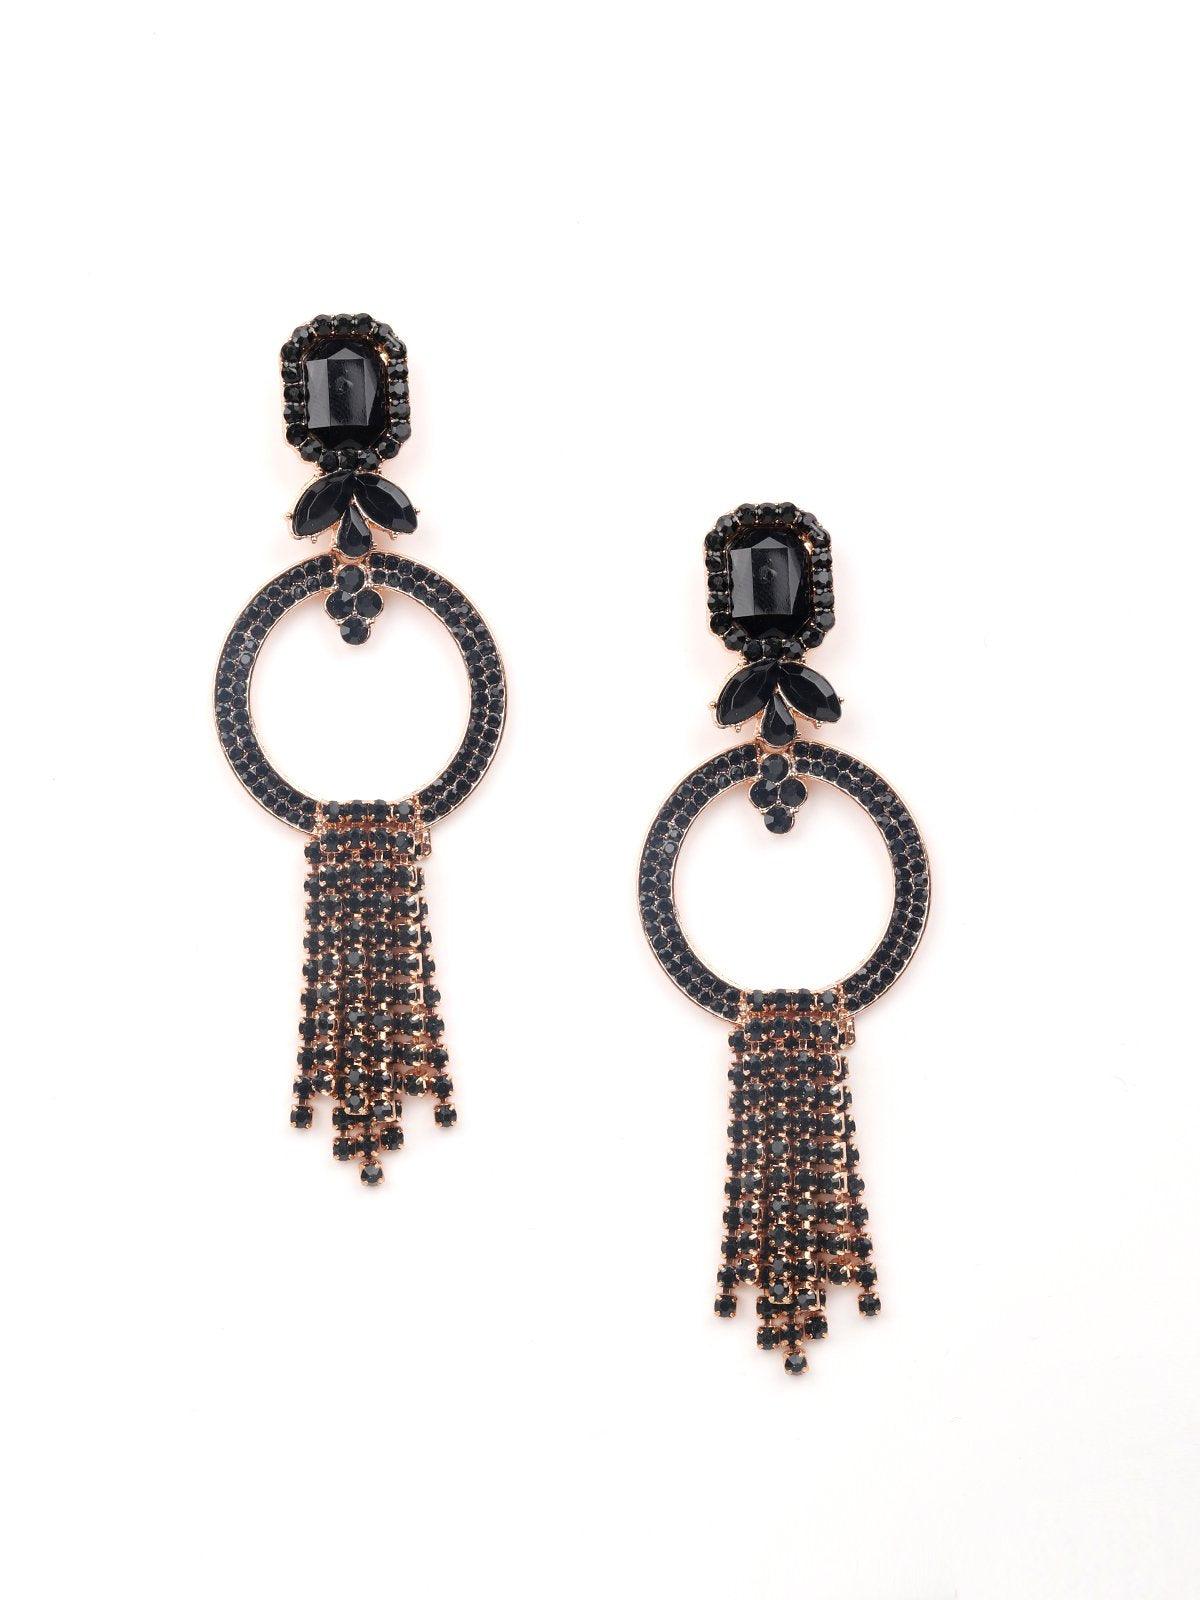 Women's Gold-Tone Black Hoops With Tassels Earrings - Odette